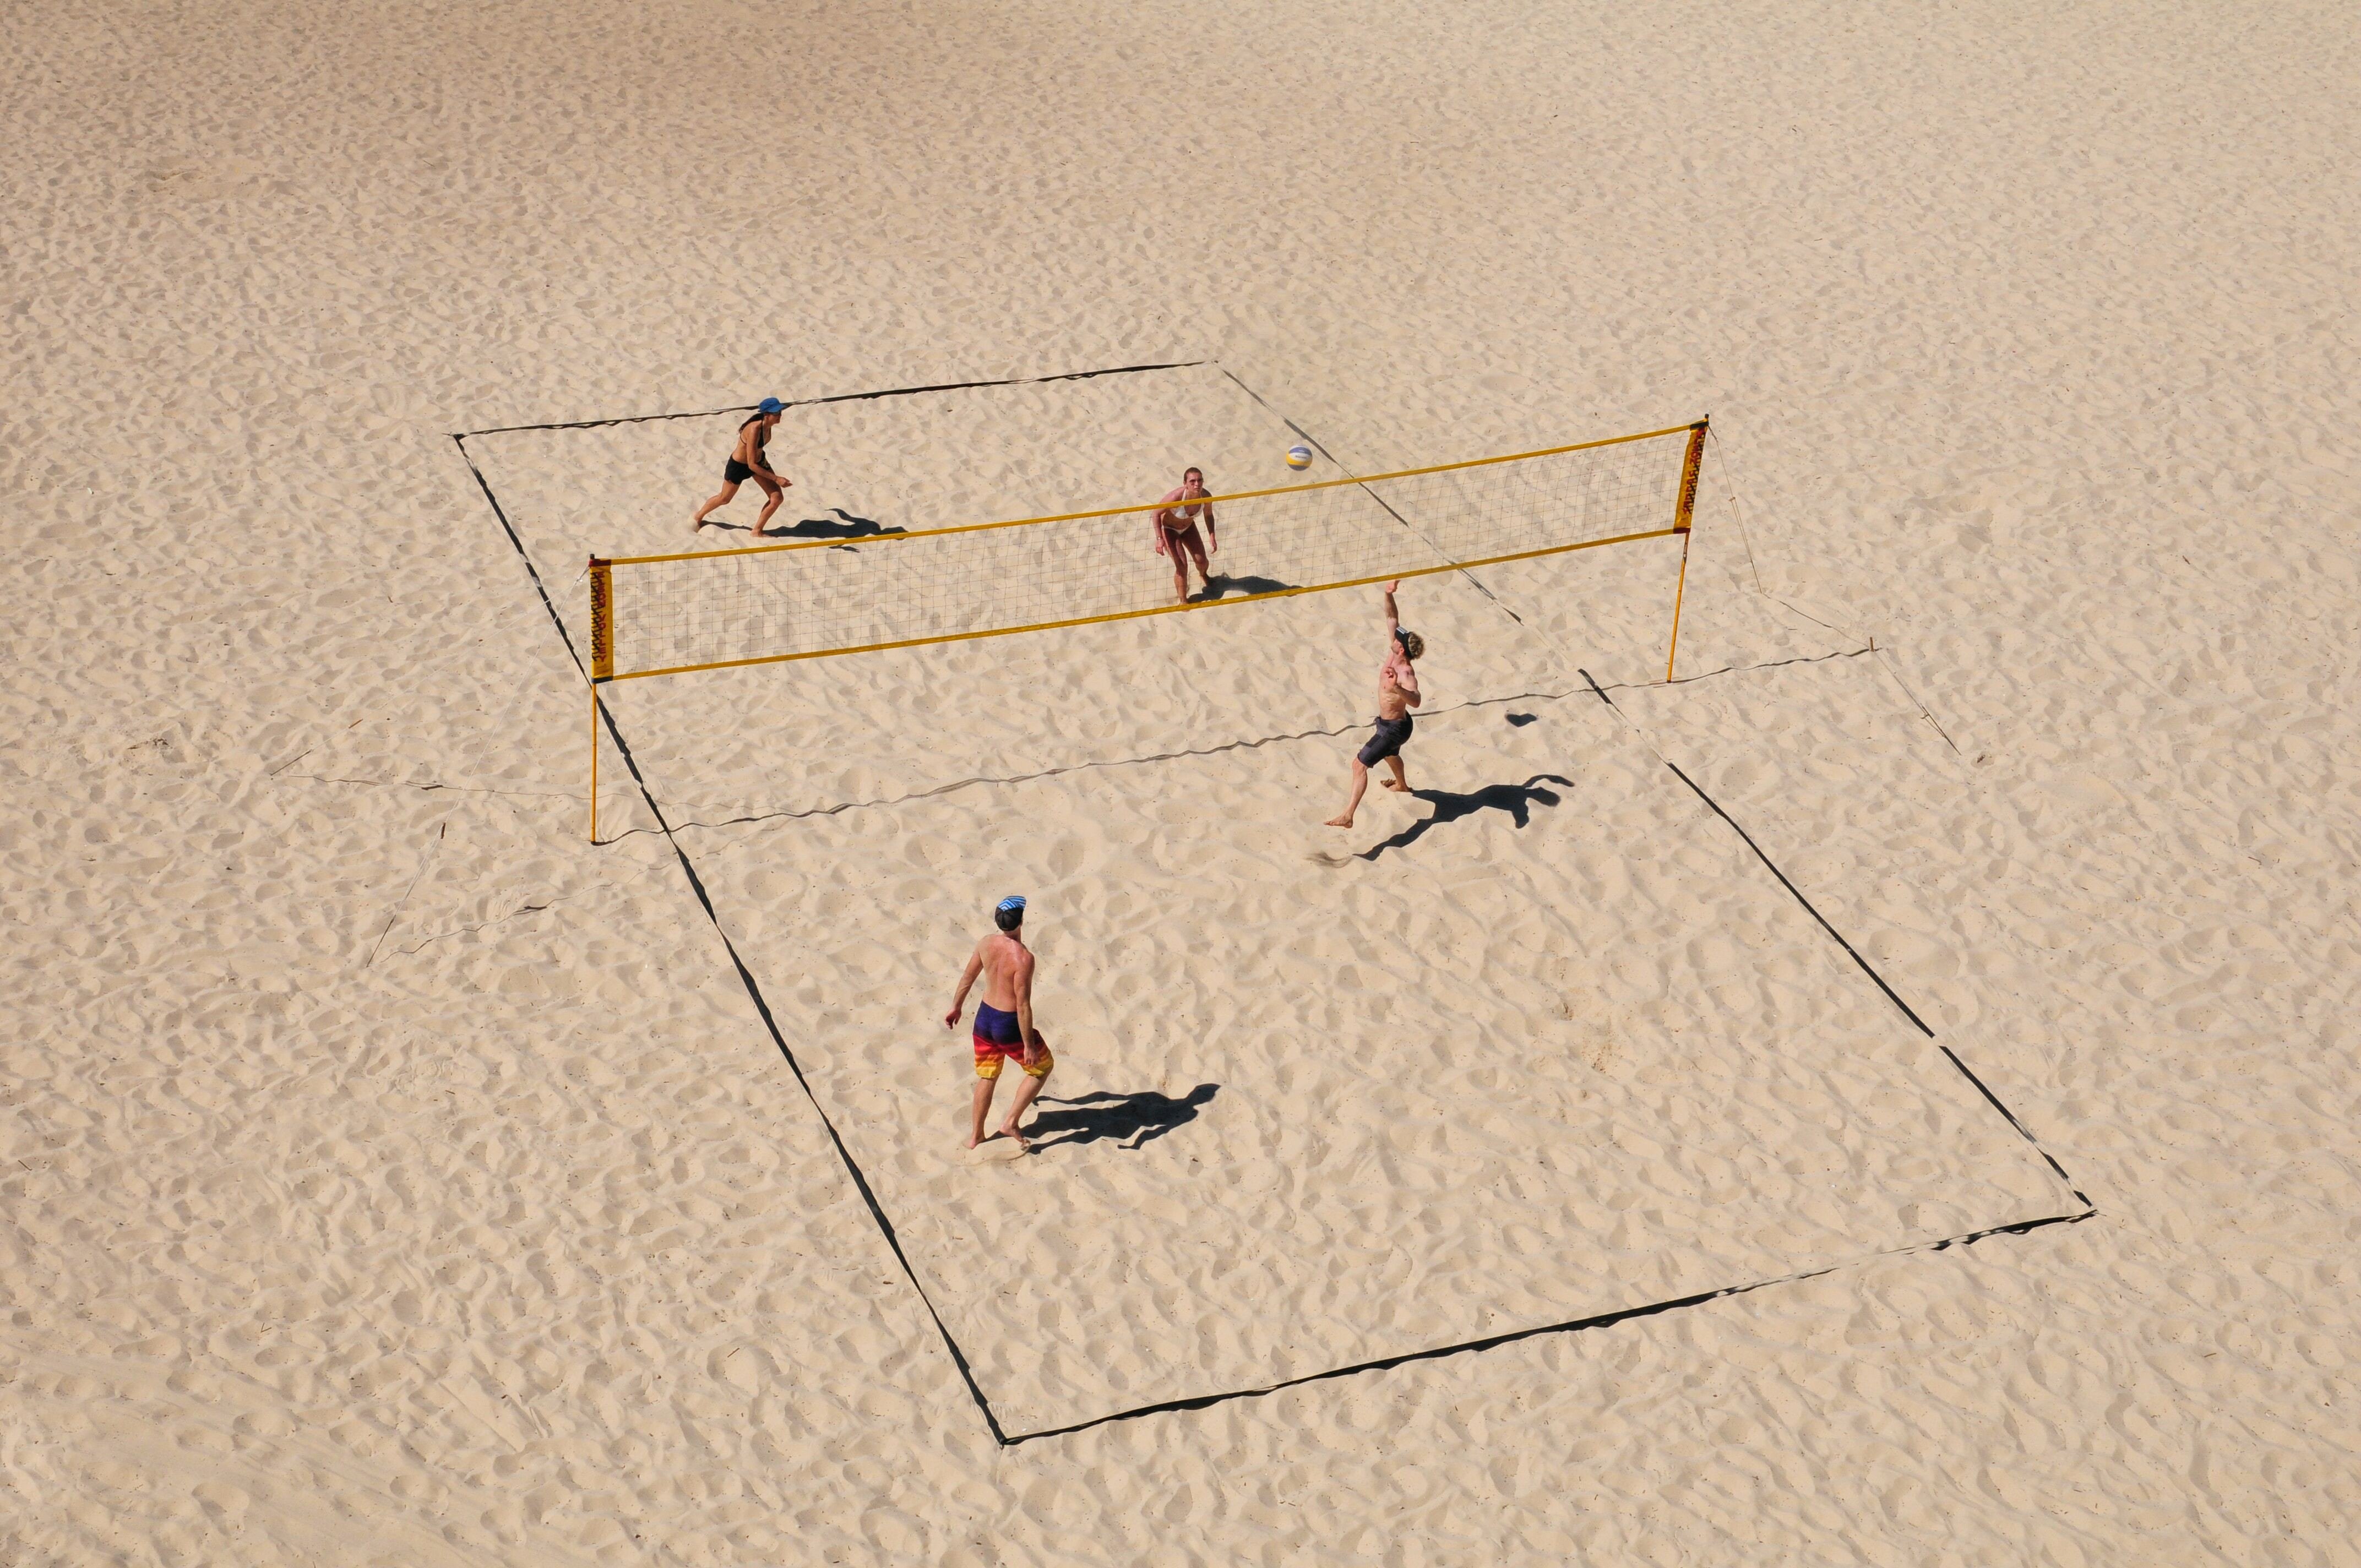 1. O voleibol é um esporte praticado entre duas equipes numa